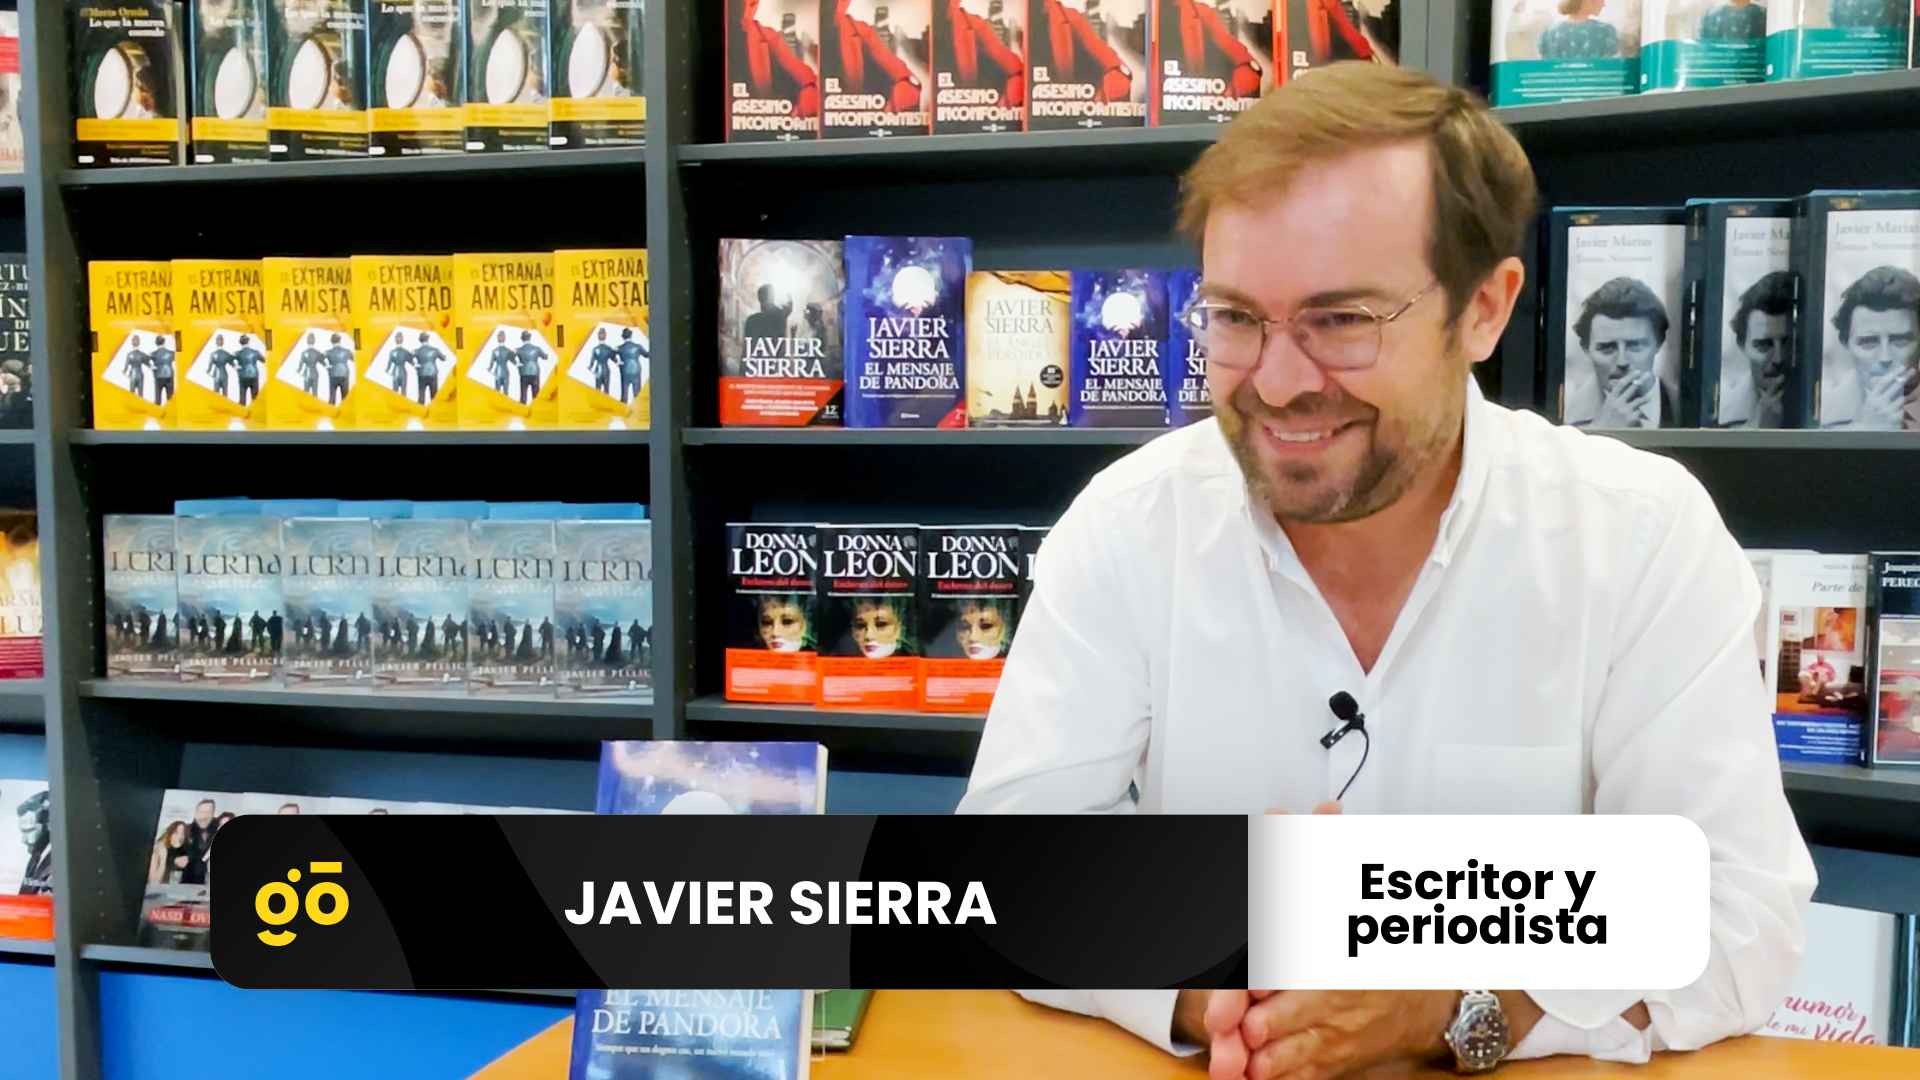 Javier Sierra, periodista y escritor turolense galardonado con el Premio Planeta en 2017 por El fuego invisible